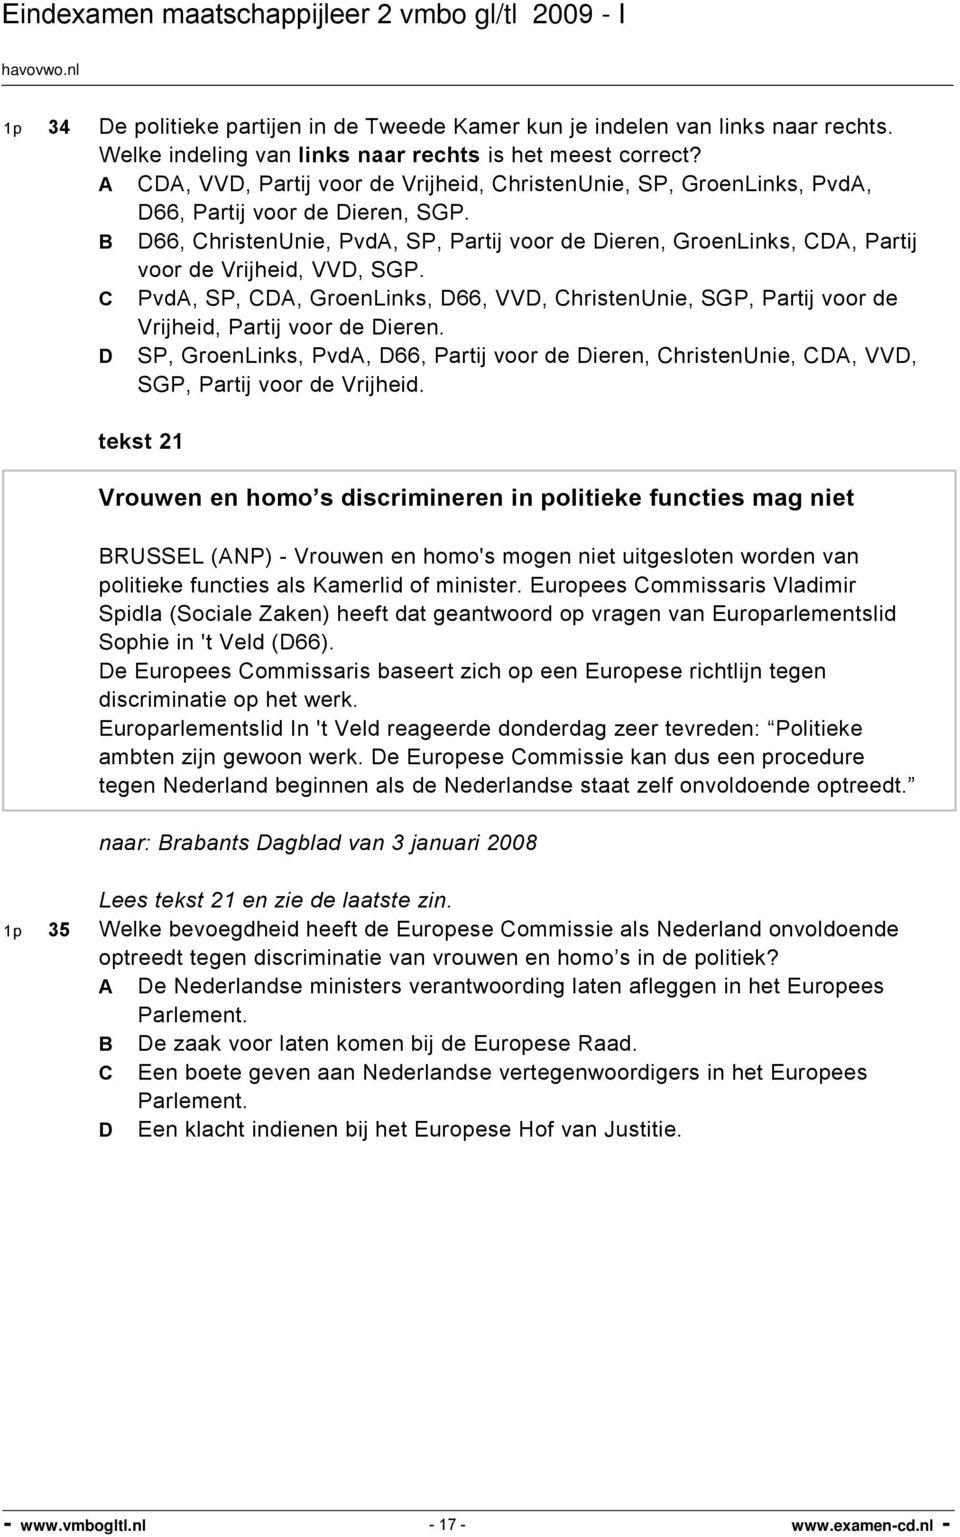 B D66, ChristenUnie, PvdA, SP, Partij voor de Dieren, GroenLinks, CDA, Partij voor de Vrijheid, VVD, SGP.